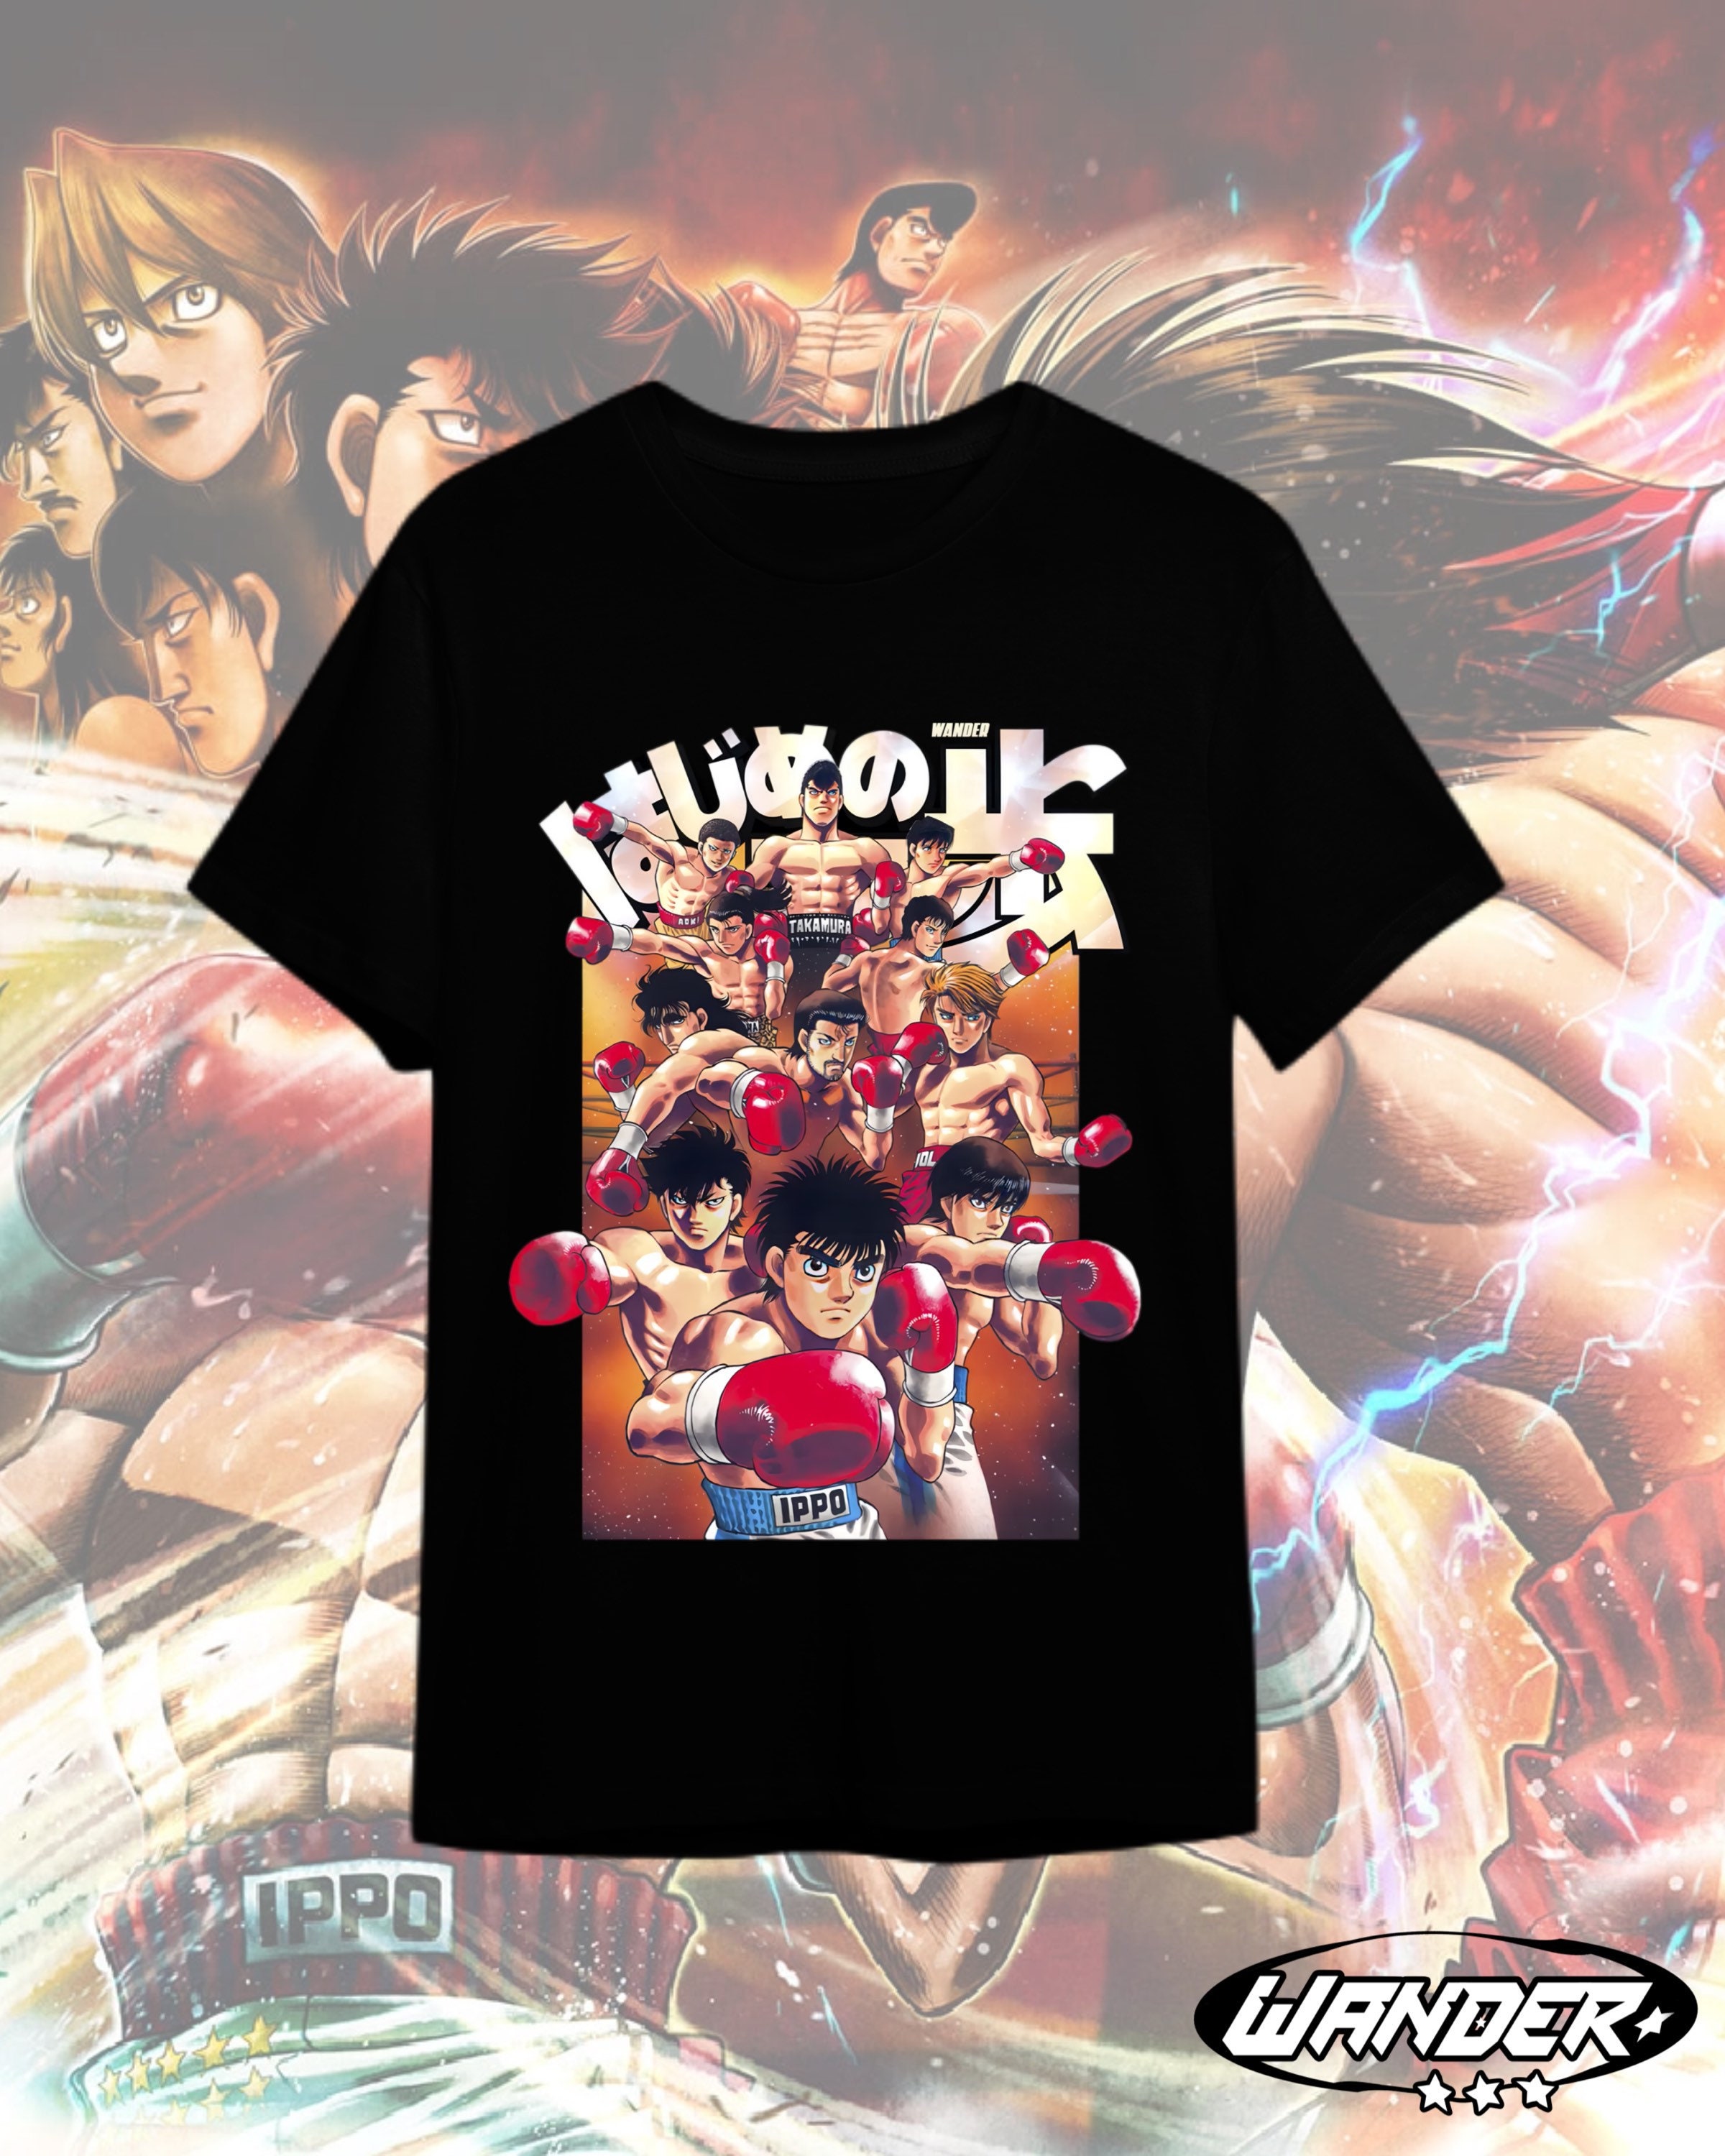 Streetwear Japonês E Menina Anime Tshirt Roupas Com Capa De Braço